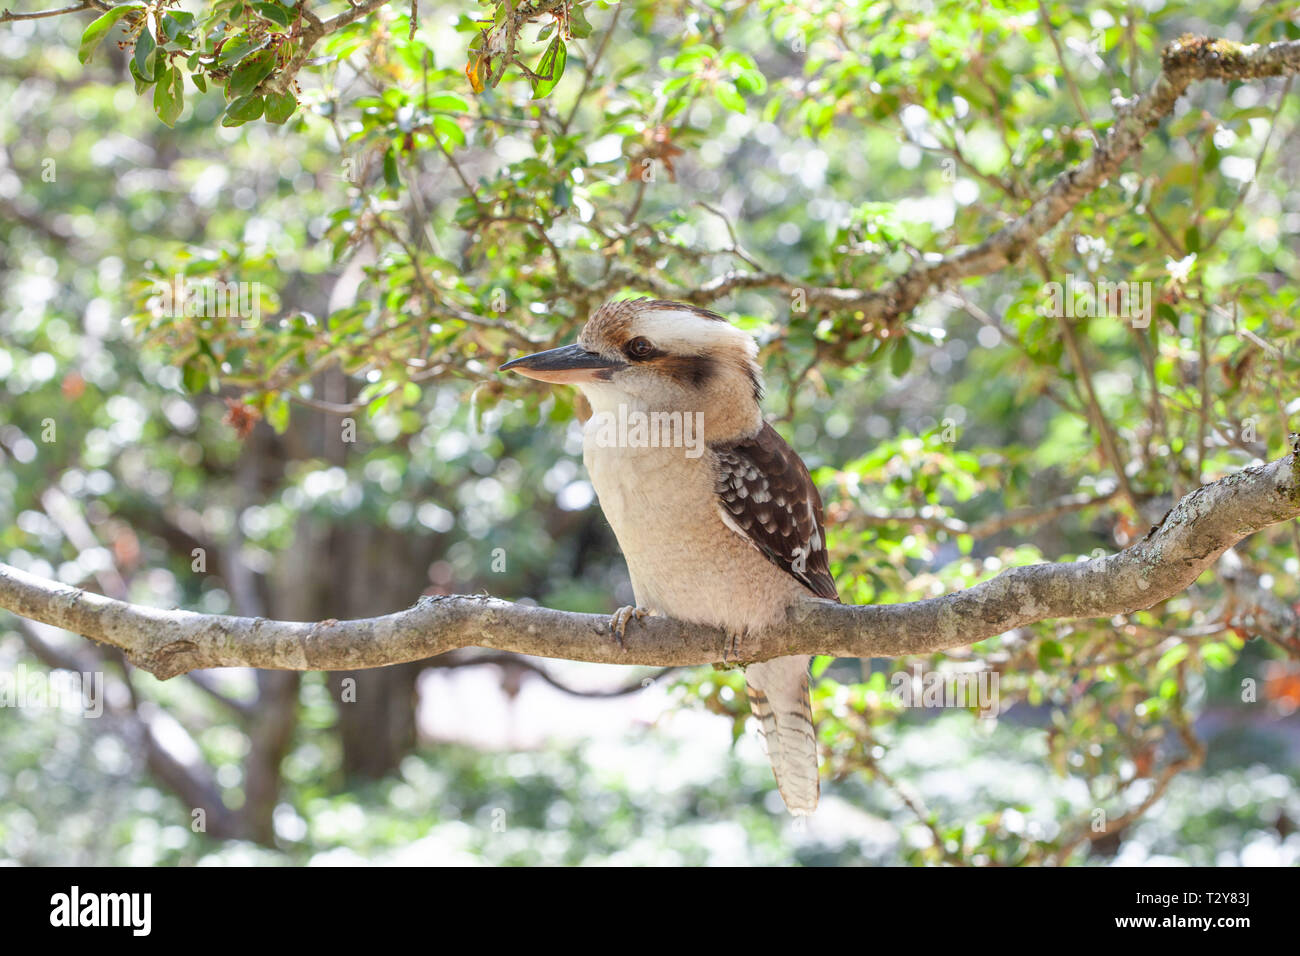 Kookaburra on tree branch on bright summer day Stock Photo